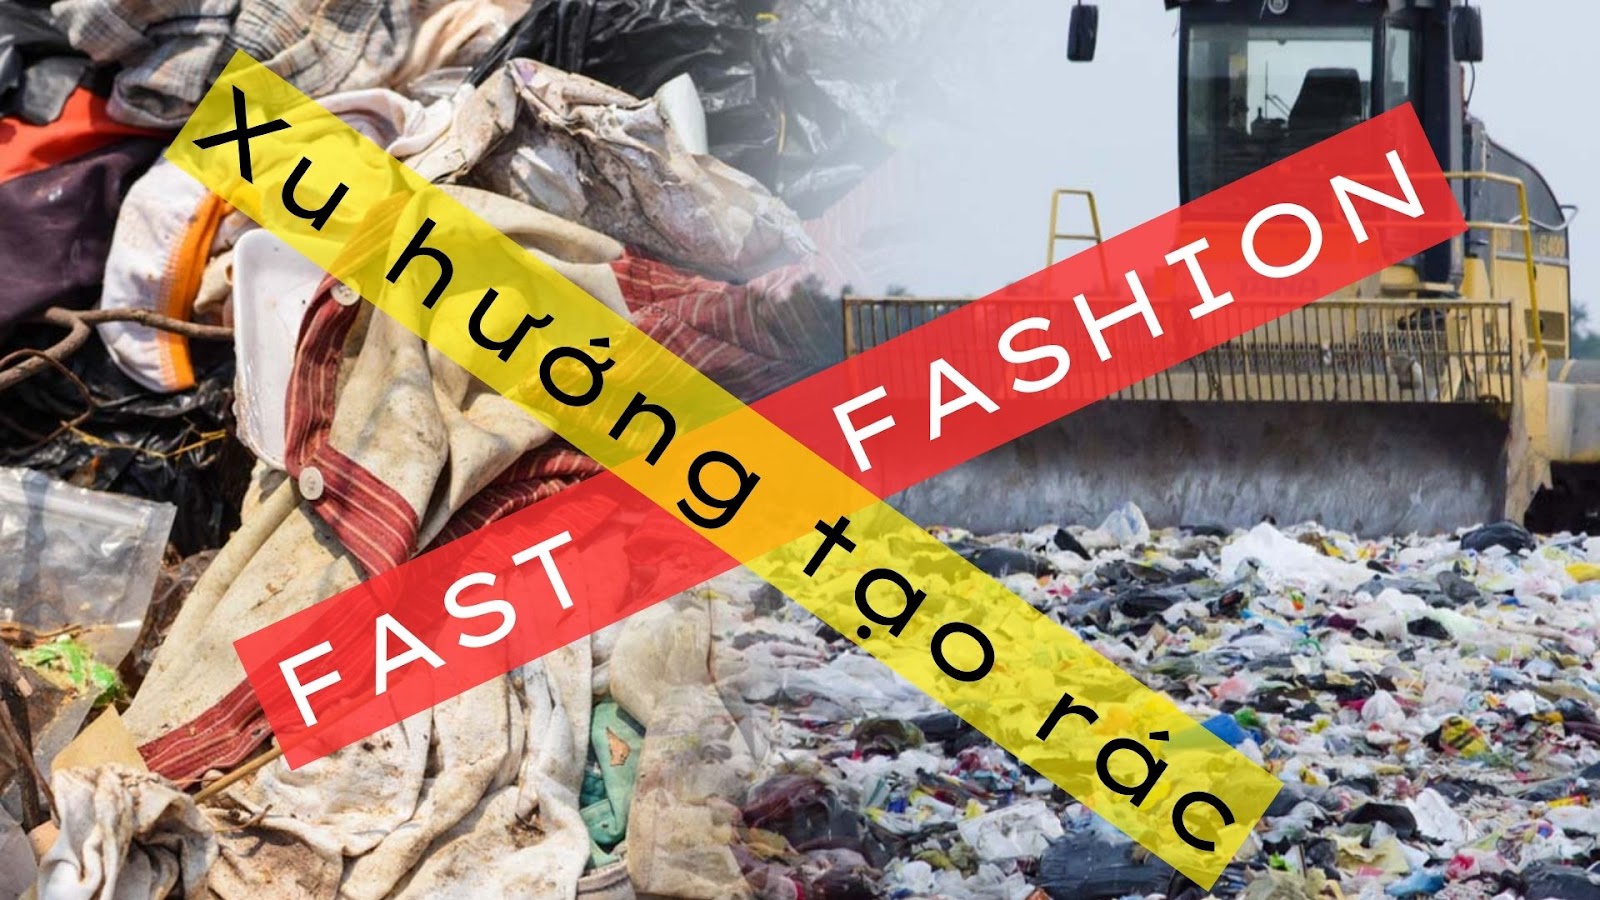 Lượng quần áo vứt bỏ càng nhiều chứng tỏ lượng quần áo được sản xuất ra càng cao